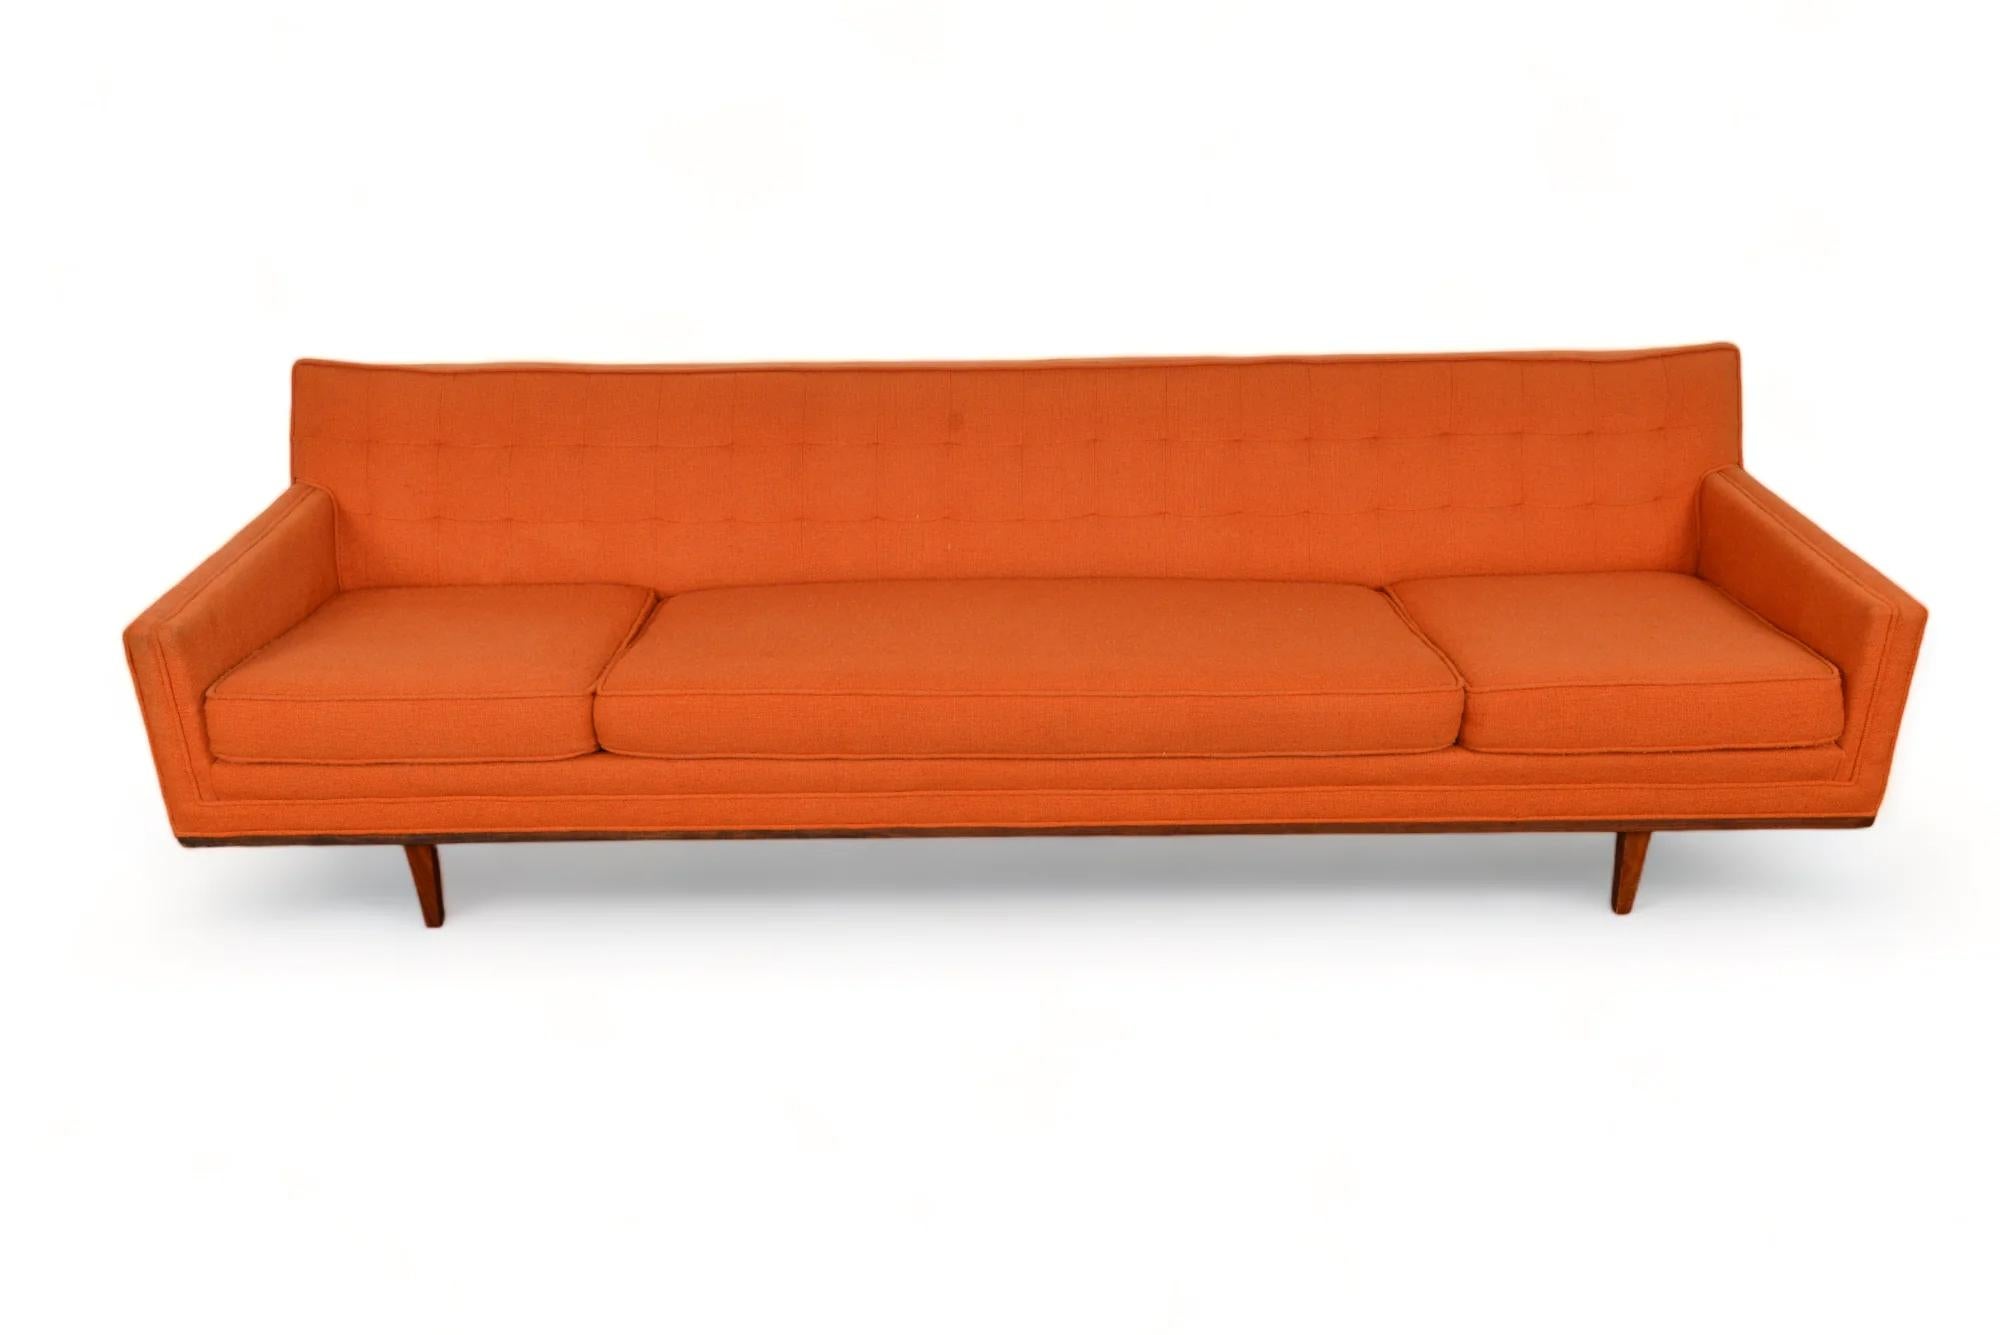 Origine : USA
Designer : Inconnu
Fabricant : Metropolitan Furniture Company
Époque : années 1960
MATERIAL : Noyer, laine
Dimensions : 97″ de largeur x 32″ de profondeur x 28″ de hauteur, assise : 15.5